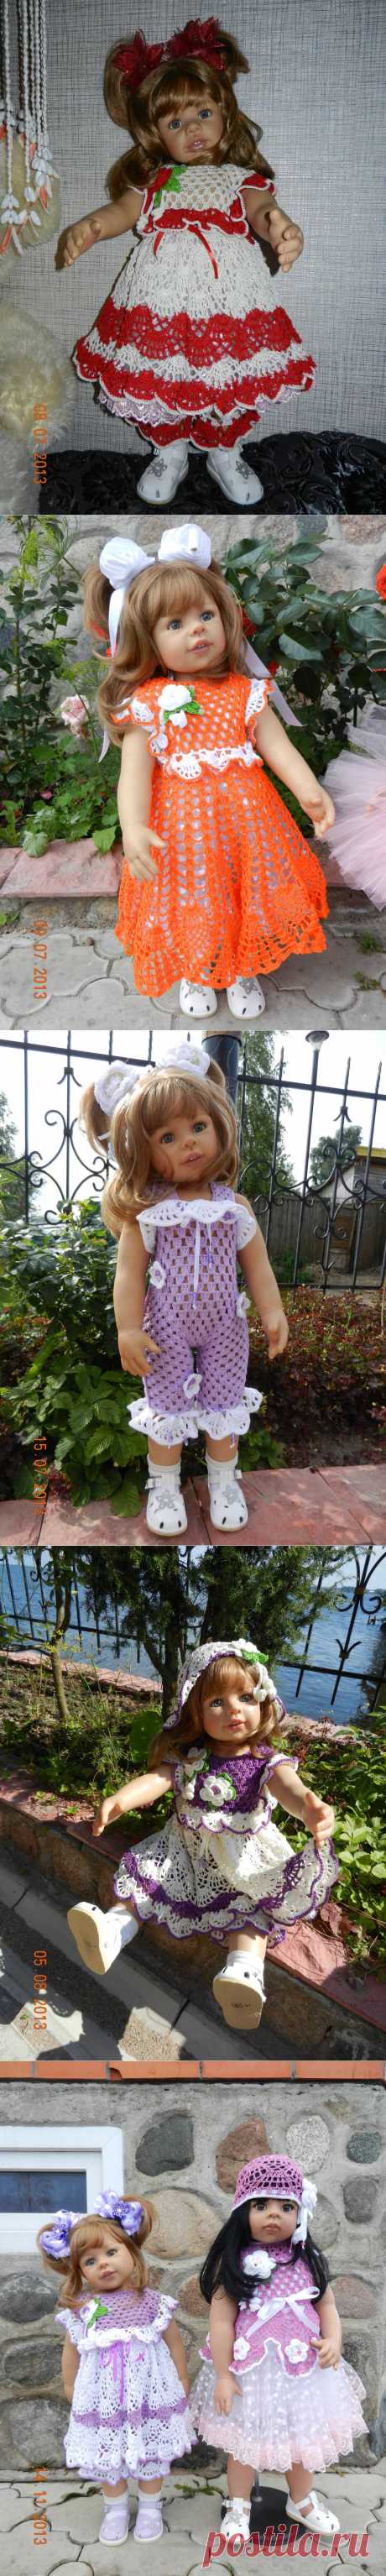 Озорная девочка Gina от Monika Levenig / Одежда и обувь для кукол - своими руками и не только / Бэйбики. Куклы фото. Одежда для кукол